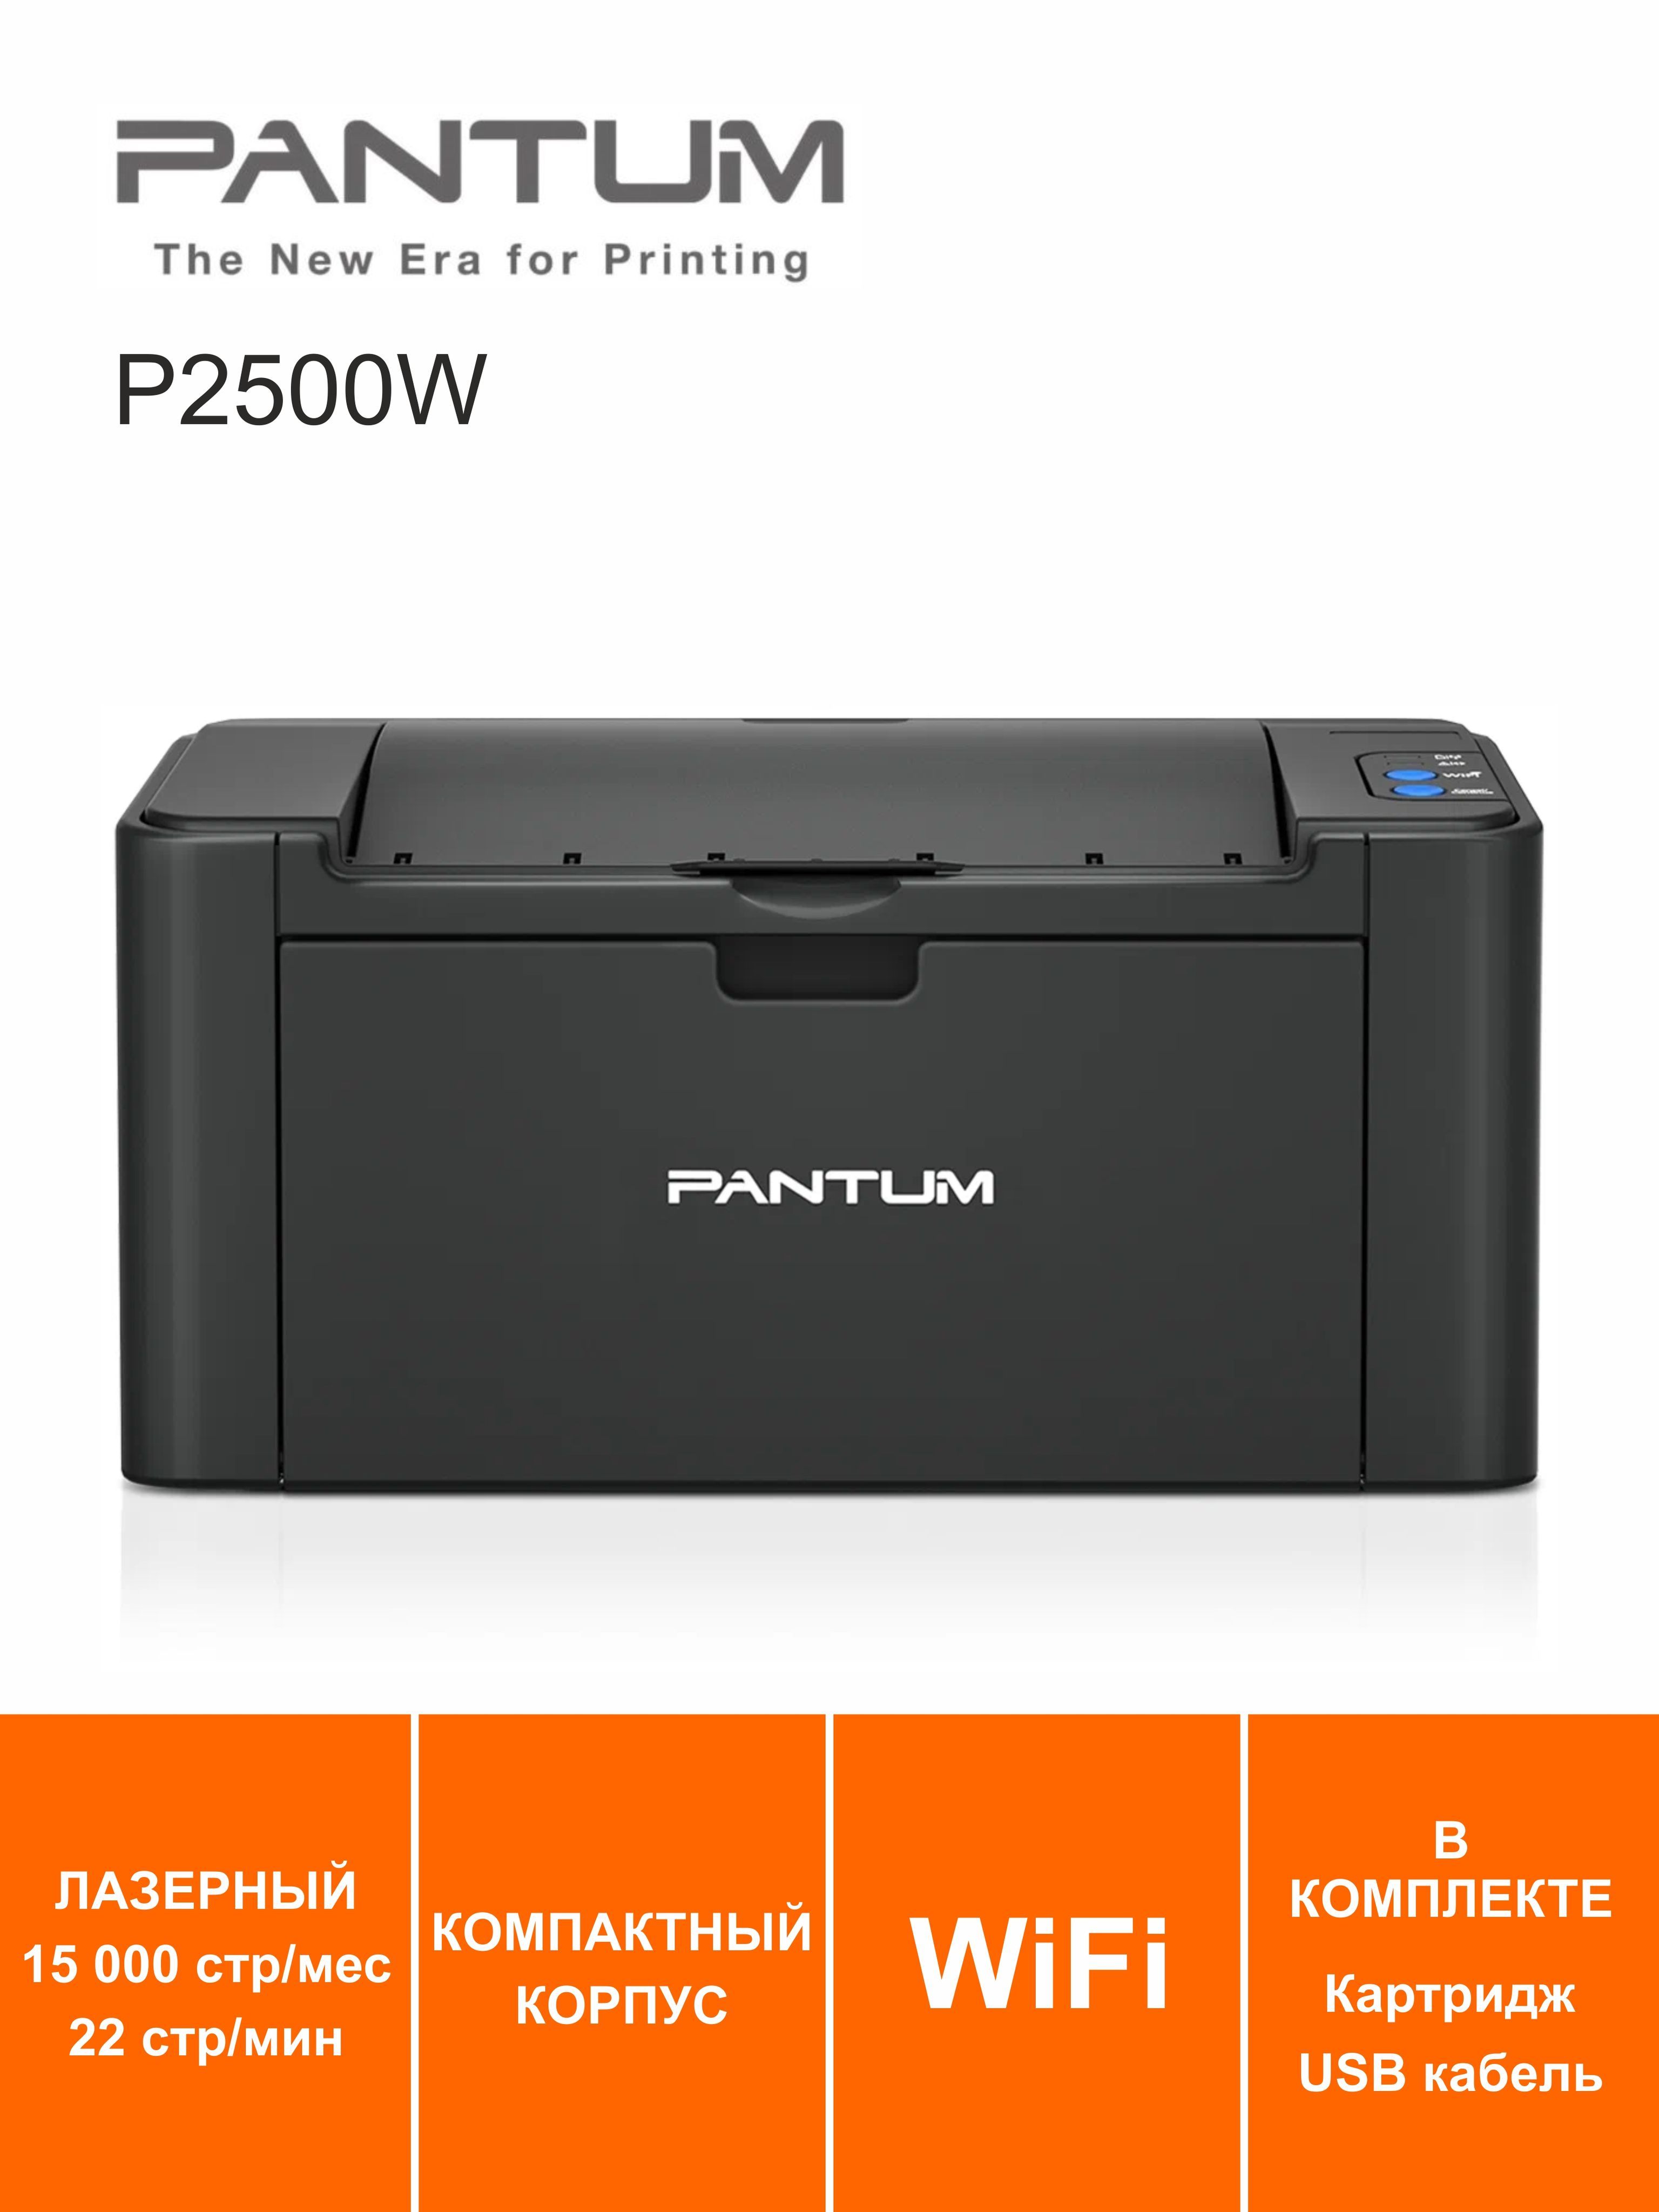 Купить принтер pantum p2500w. Pantum p2500w. Принтер лазерный Pantum p2500. Pantum p2500, ч/б, a4. Принтер a4 Pantum p2500w с Wi-Fi.